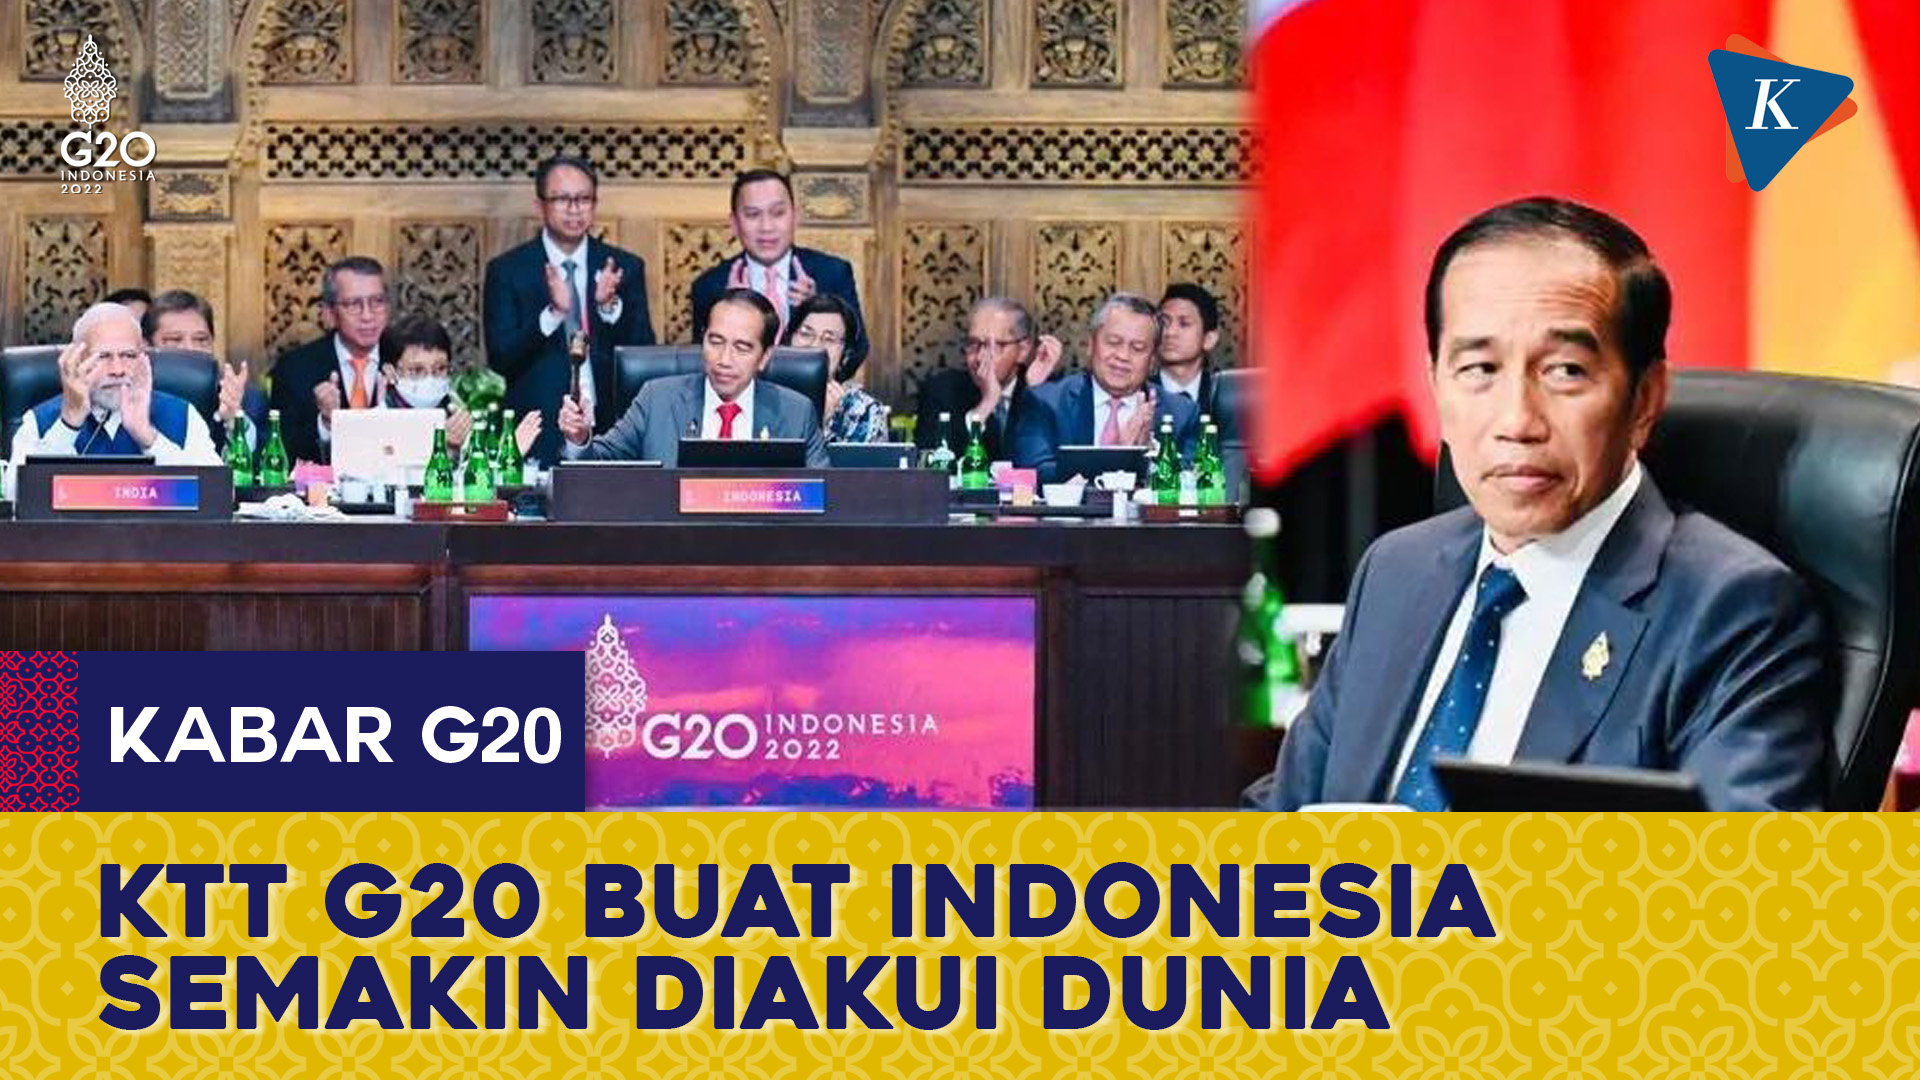 Jokowi Buat Pamor Indonesia Menjulang, Bikin Adidaya Dunia Bersepakat di KTT G20